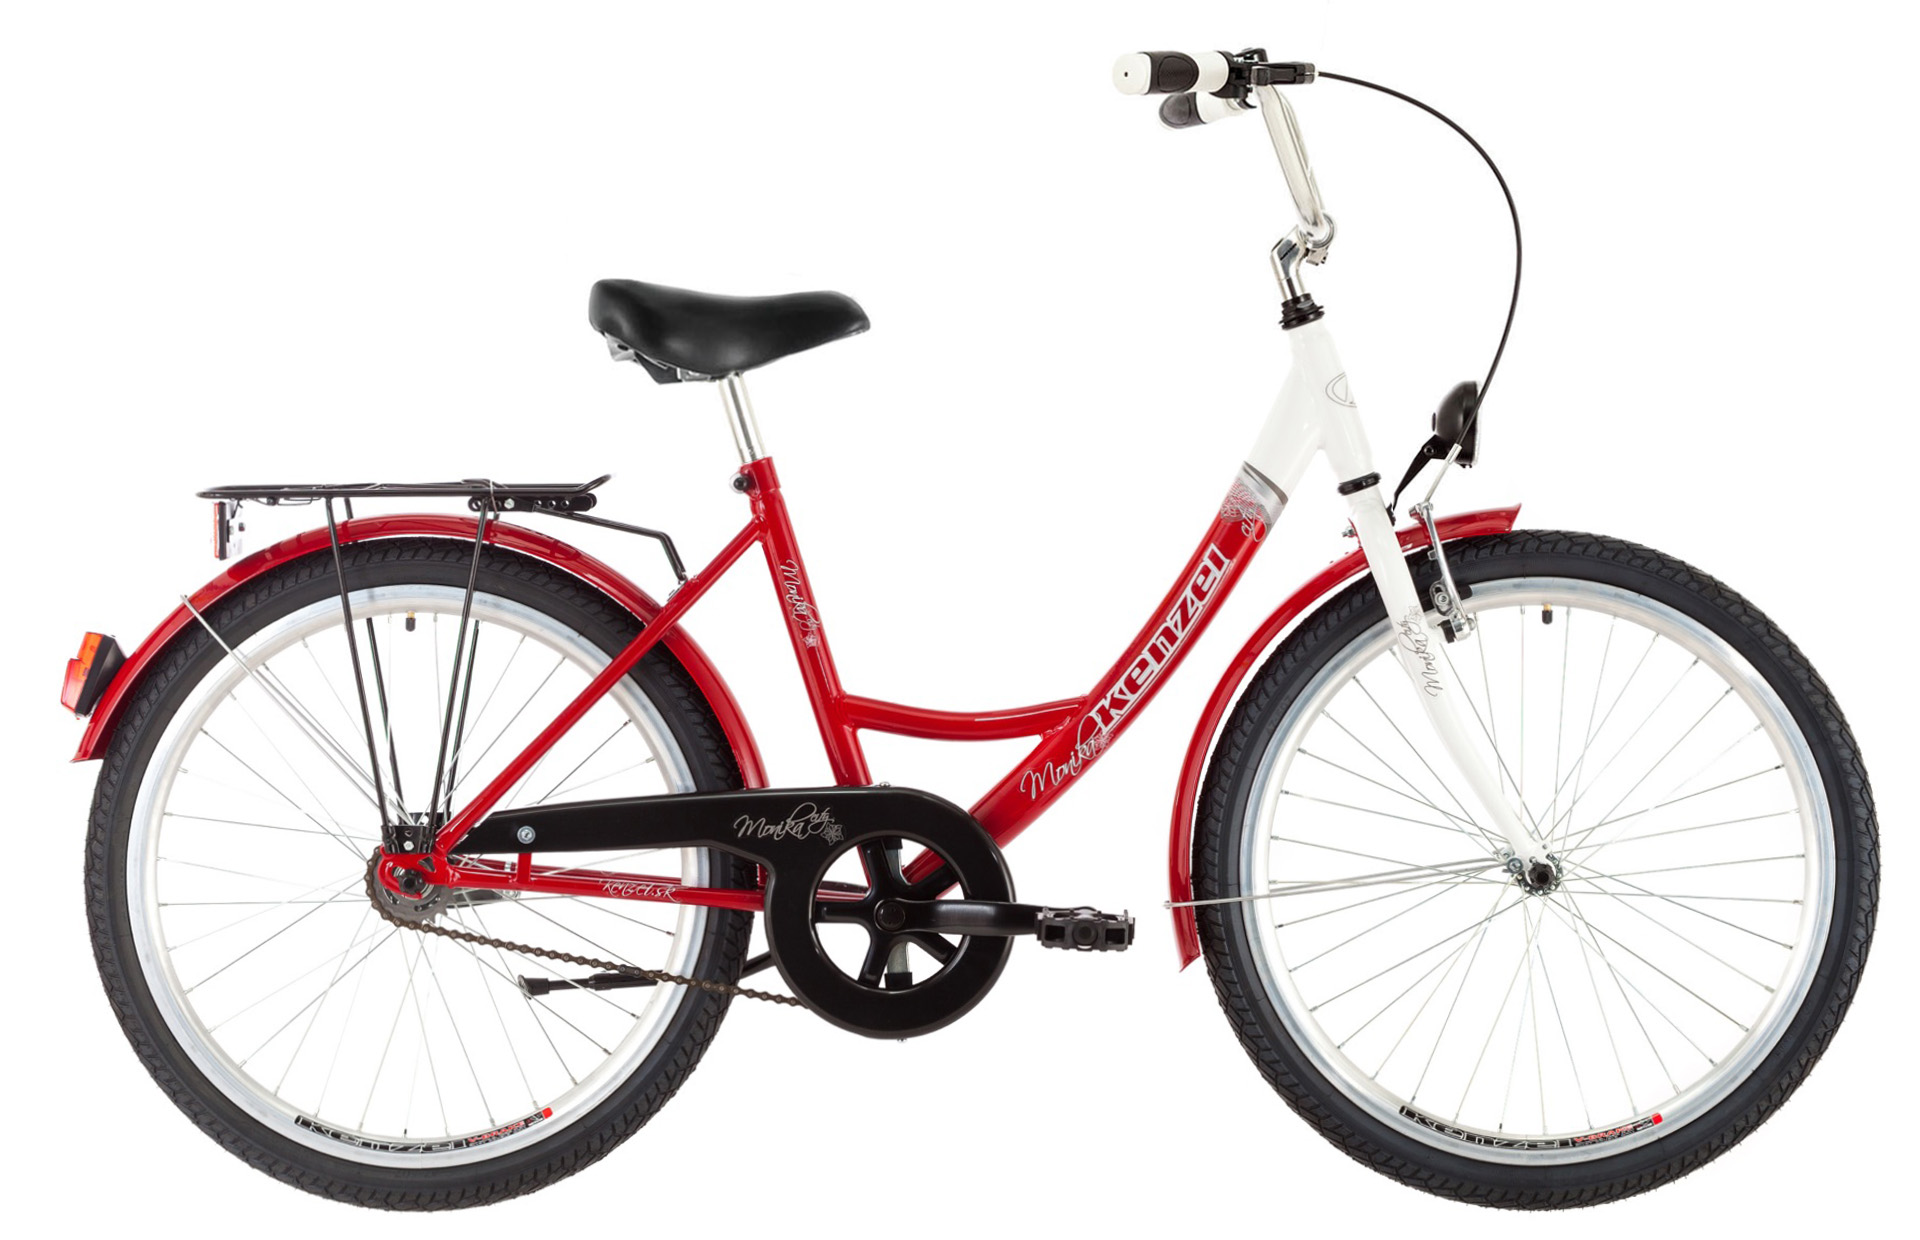 Bicykel KENZEL Monika červeno-biely